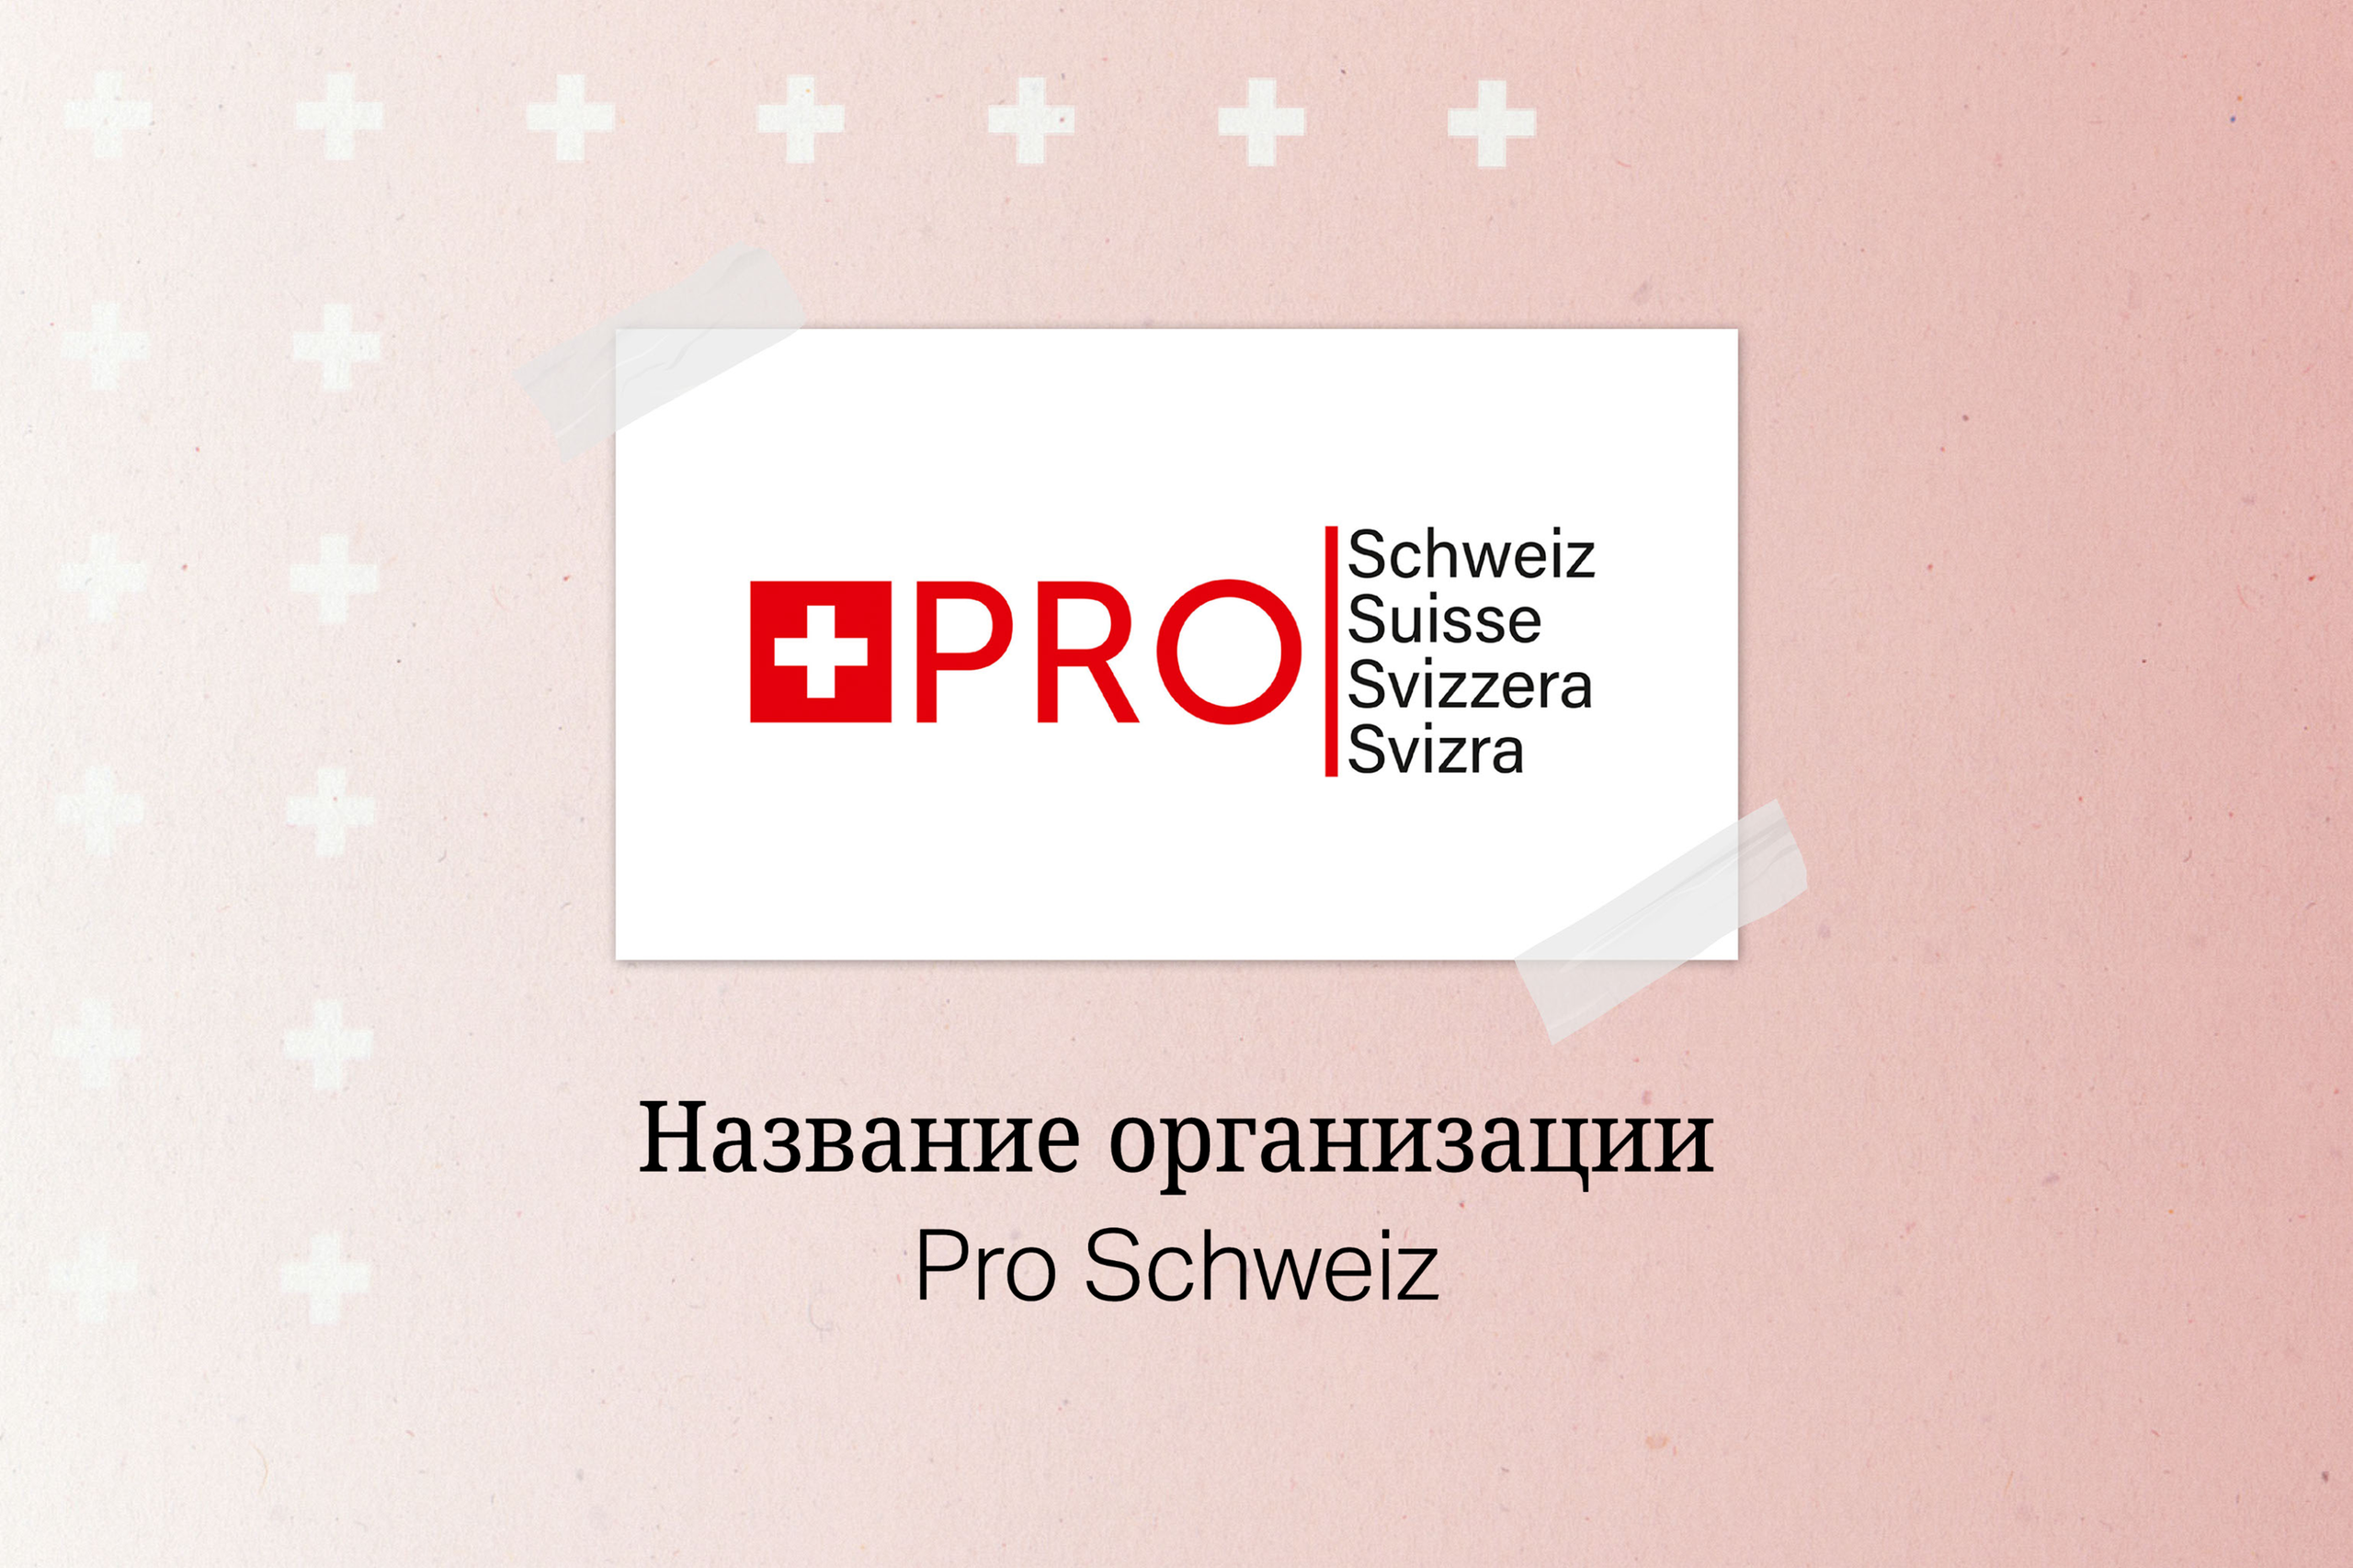 Pro Schweiz